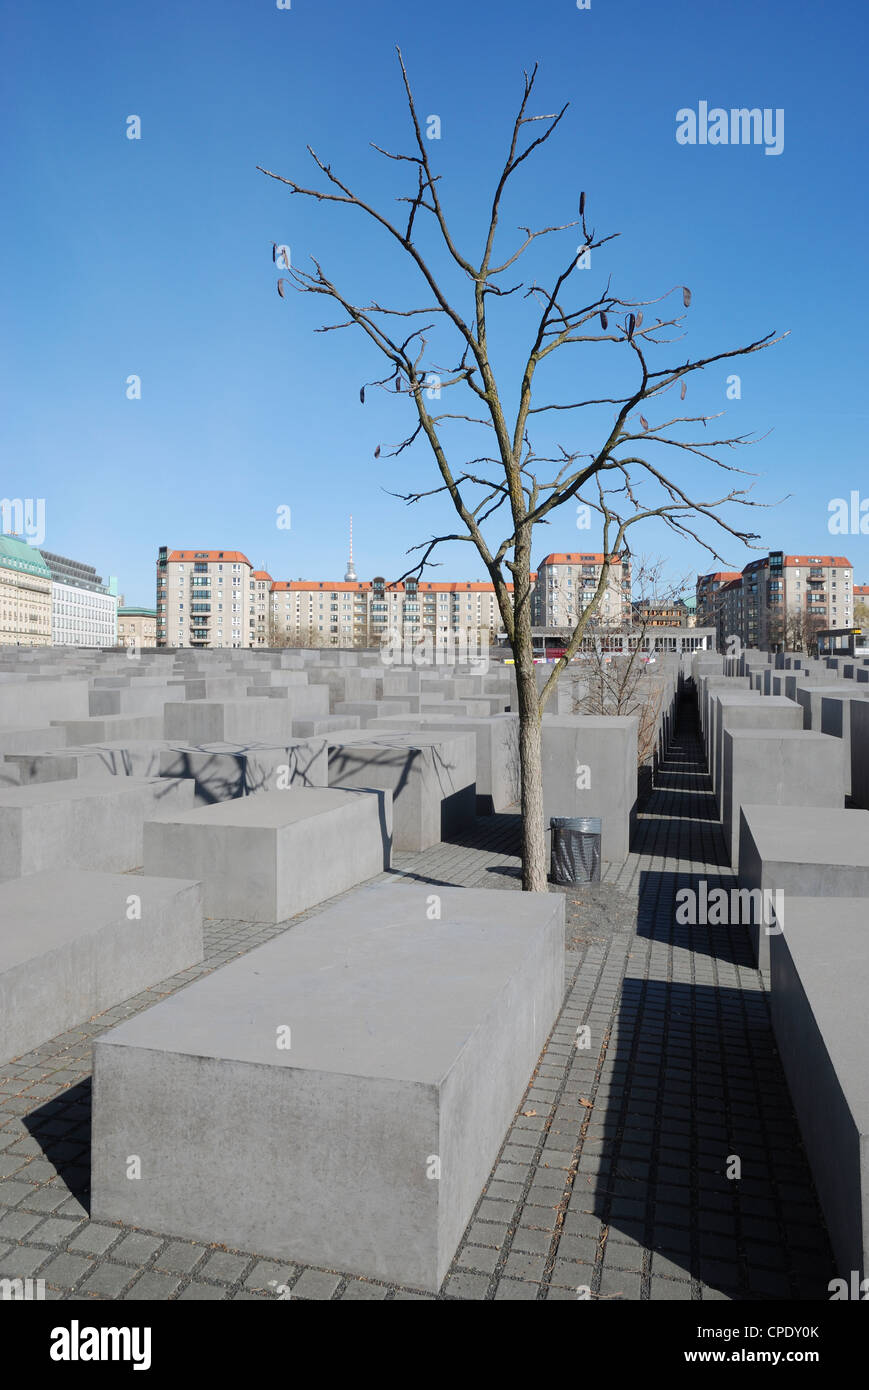 Das Denkmal für die ermordeten Juden Europas, Berlin, Deutschland. Stockfoto